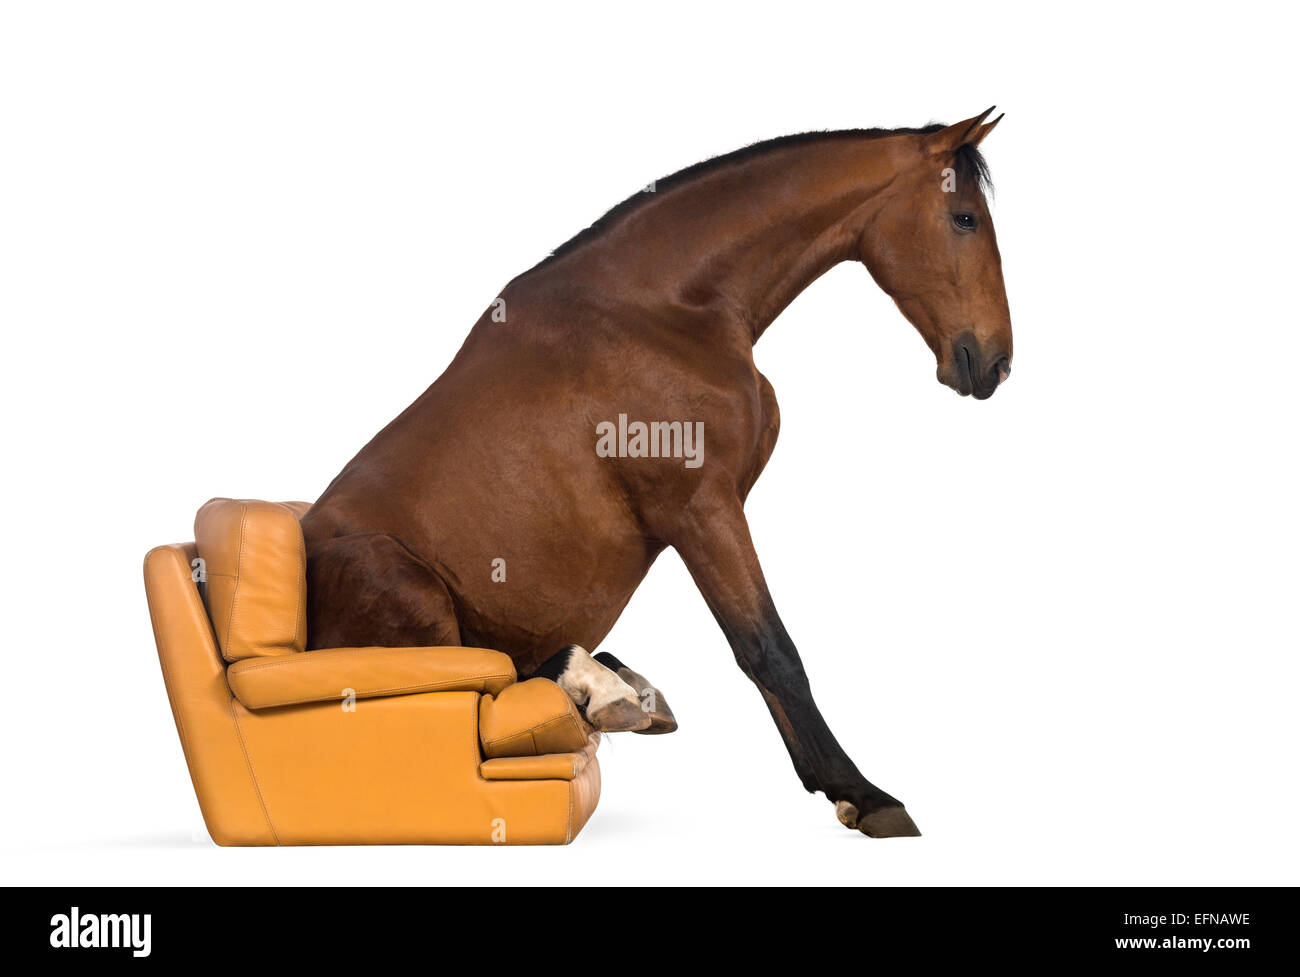 Cheval andalou assis sur un fauteuil à l'arrière-plan blanc Banque D'Images